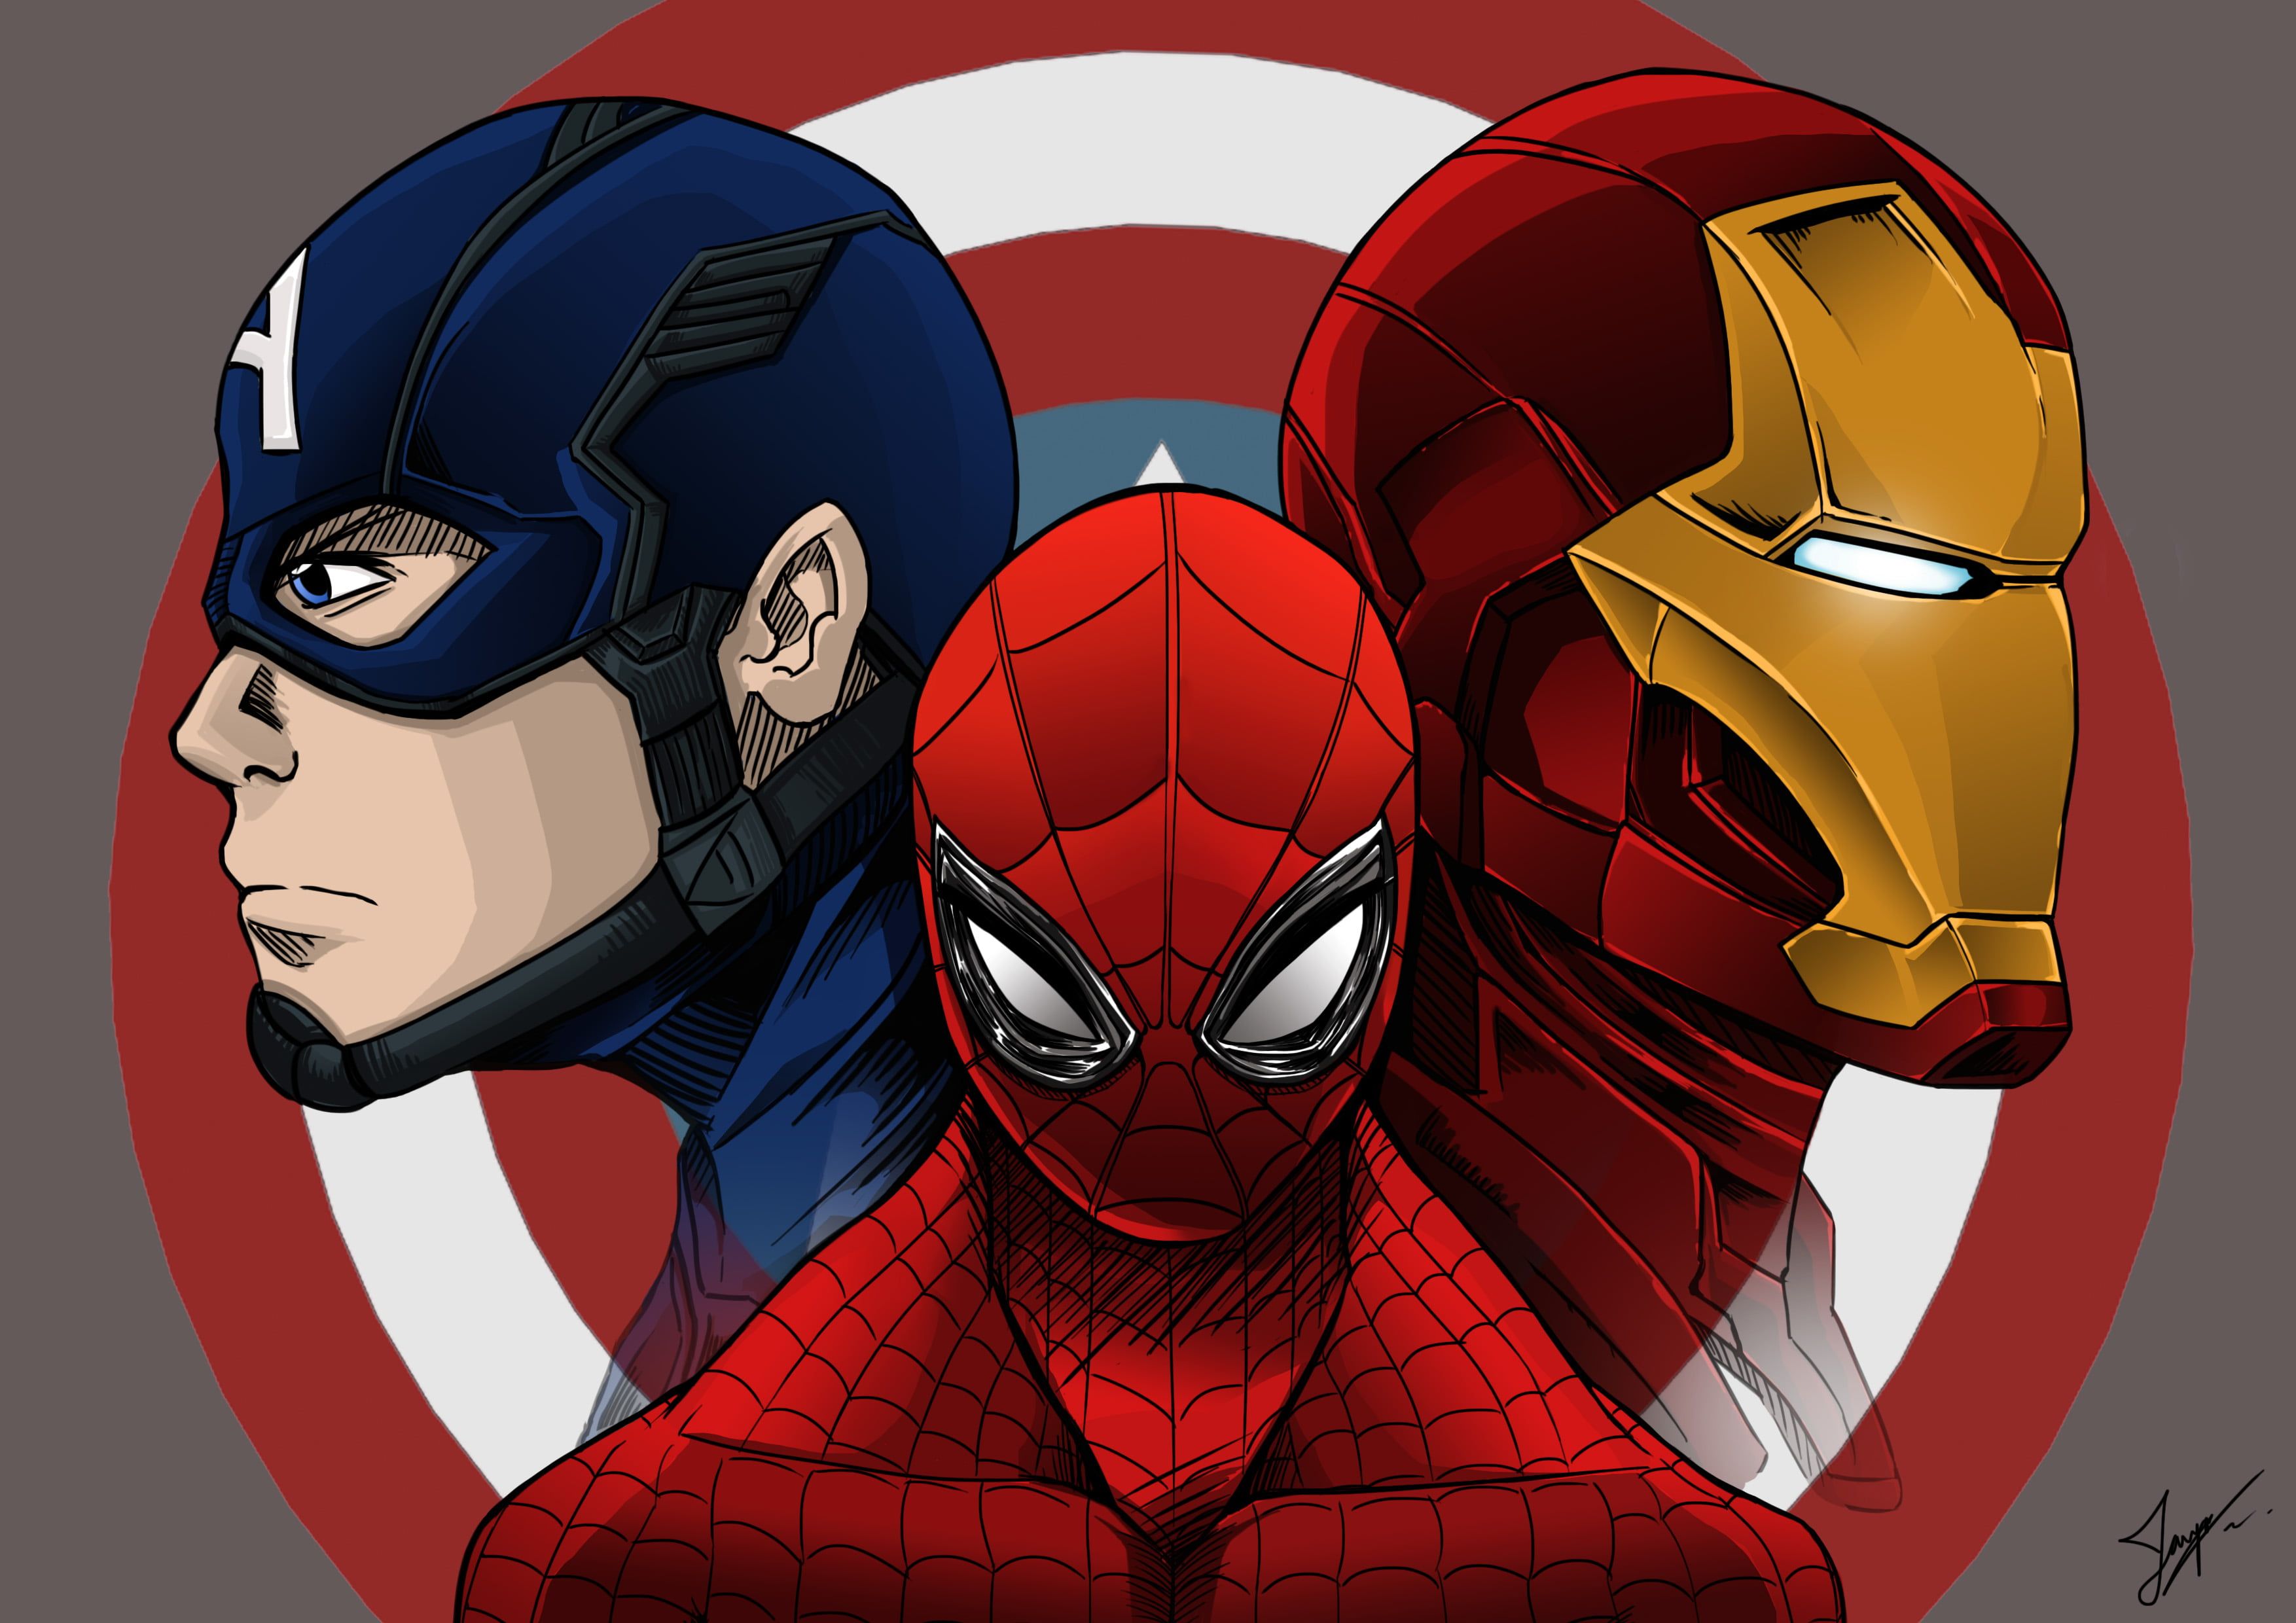 دانلود تصویر انیمیشن مرد عنکبوتی درکنار مرد آهنی و کاپیتان آمریکایی